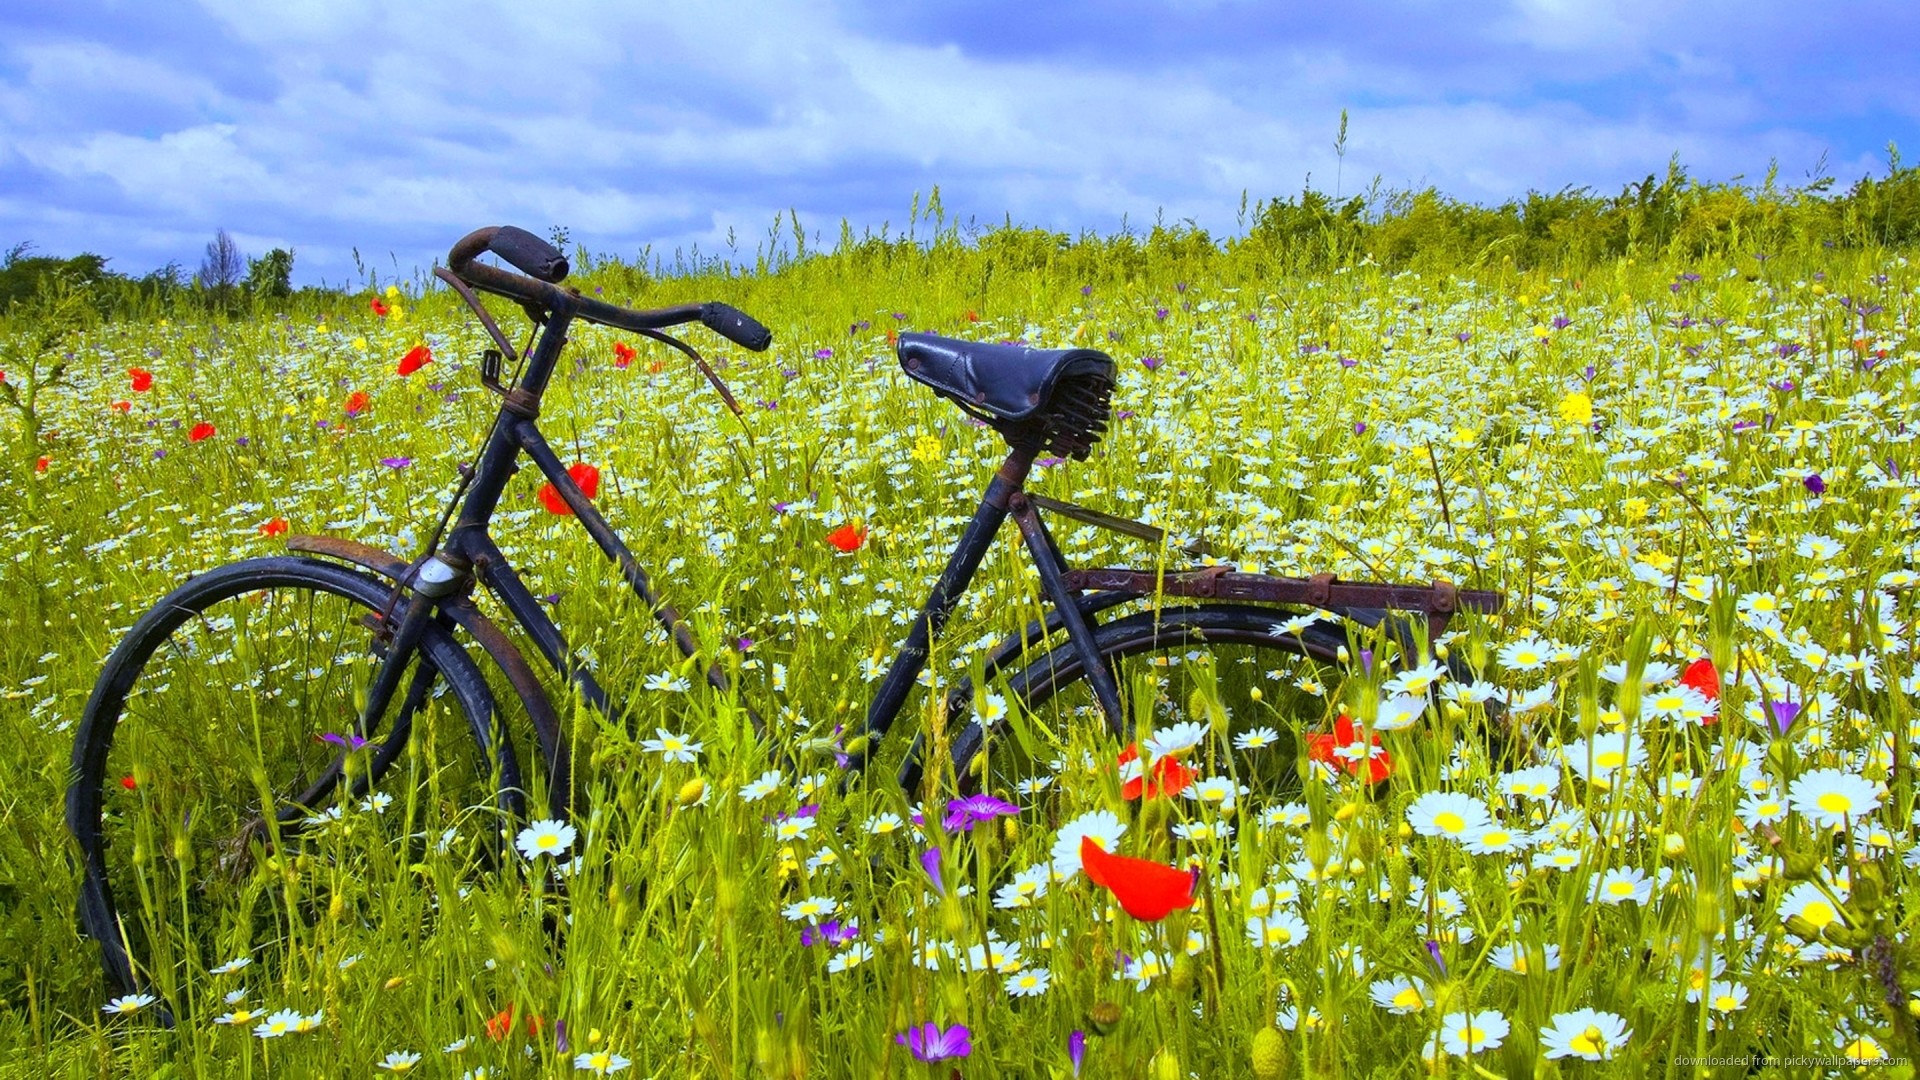 1920x1080  Bicycle In Flower Field Wallpaper wallpaper